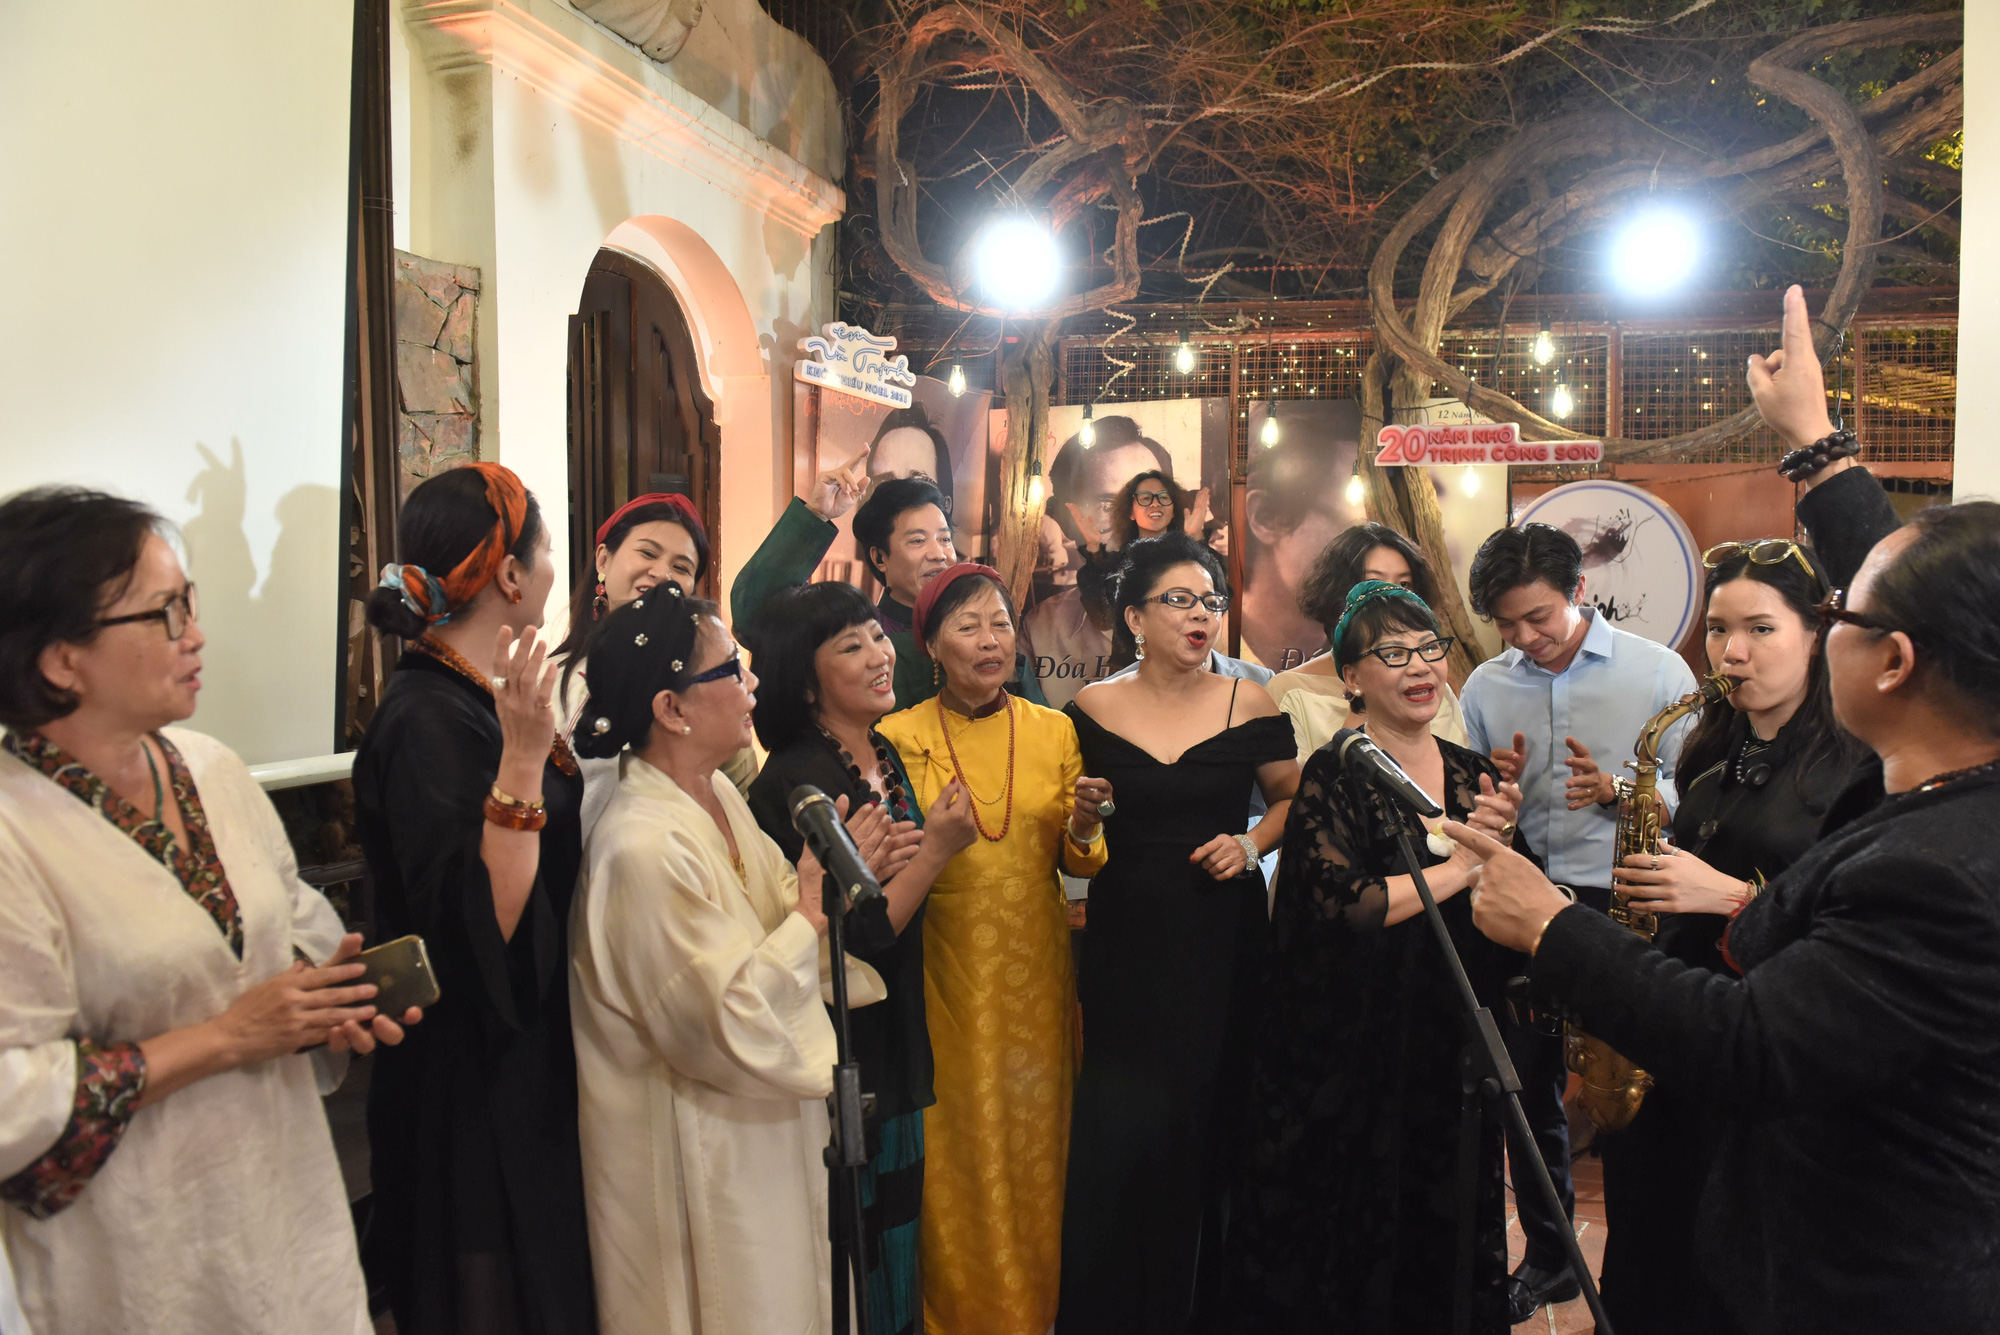 Hồng Nhung, Quang Dũng, Lân Nhã, Cẩm Vân hát ở ngôi nhà Trịnh Công Sơn từng sống - Ảnh 12.